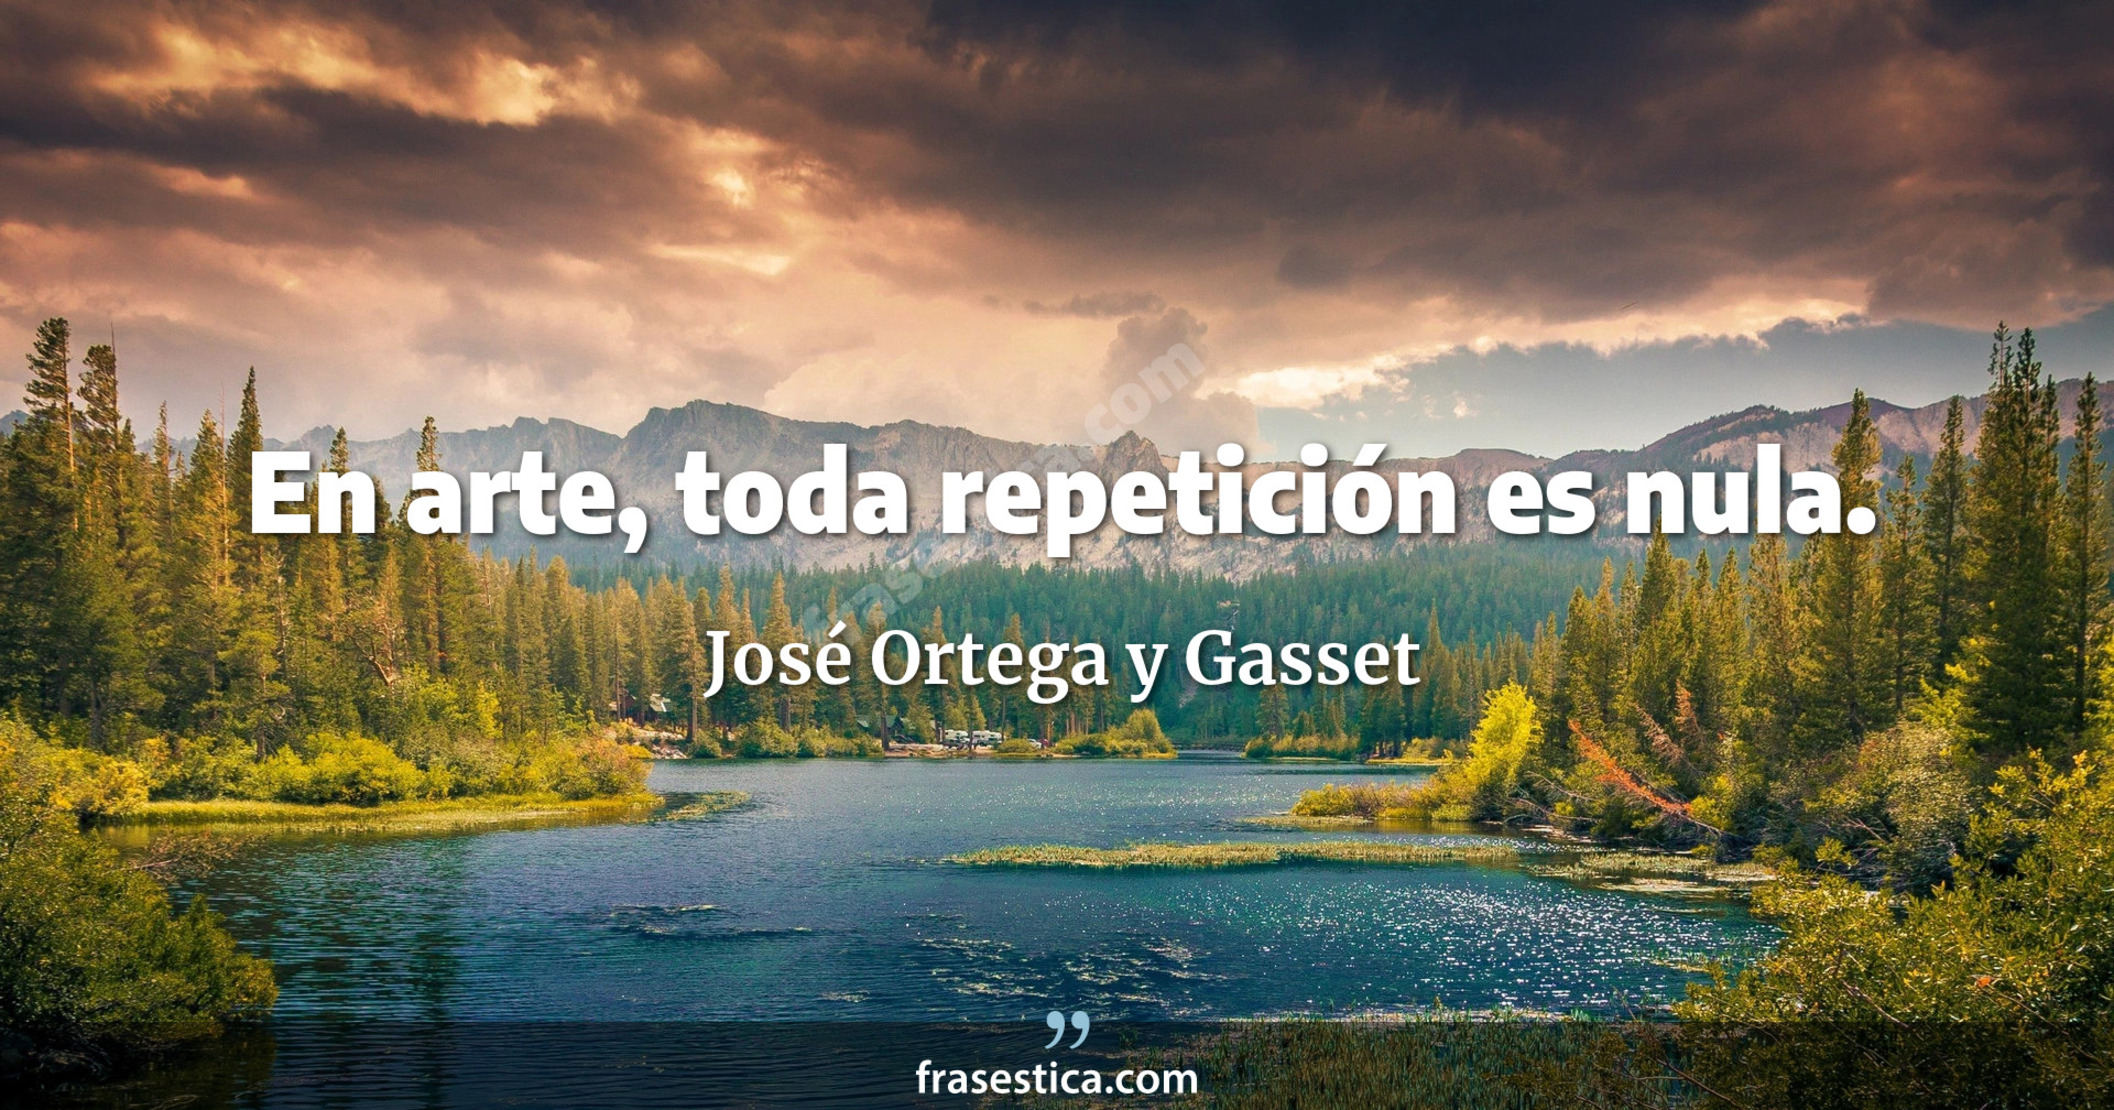 En arte, toda repetición es nula. - José Ortega y Gasset